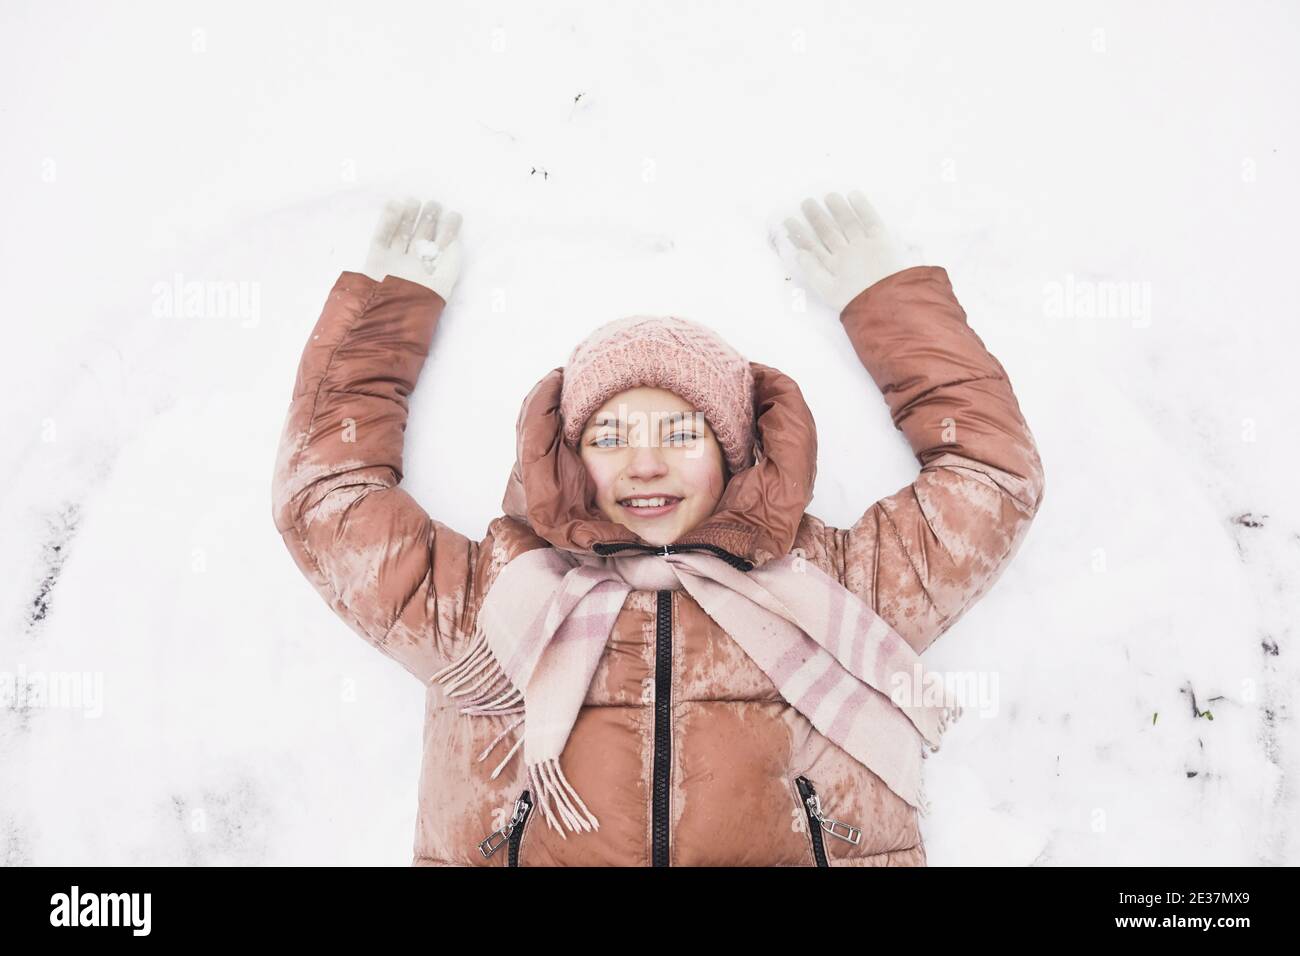 Vista dall'alto verso il basso della ragazza carina sdraiata nella neve e facendo angeli di neve mentre si gode l'inverno all'aperto e sorridendo alla macchina fotografica, copia spazio Foto Stock